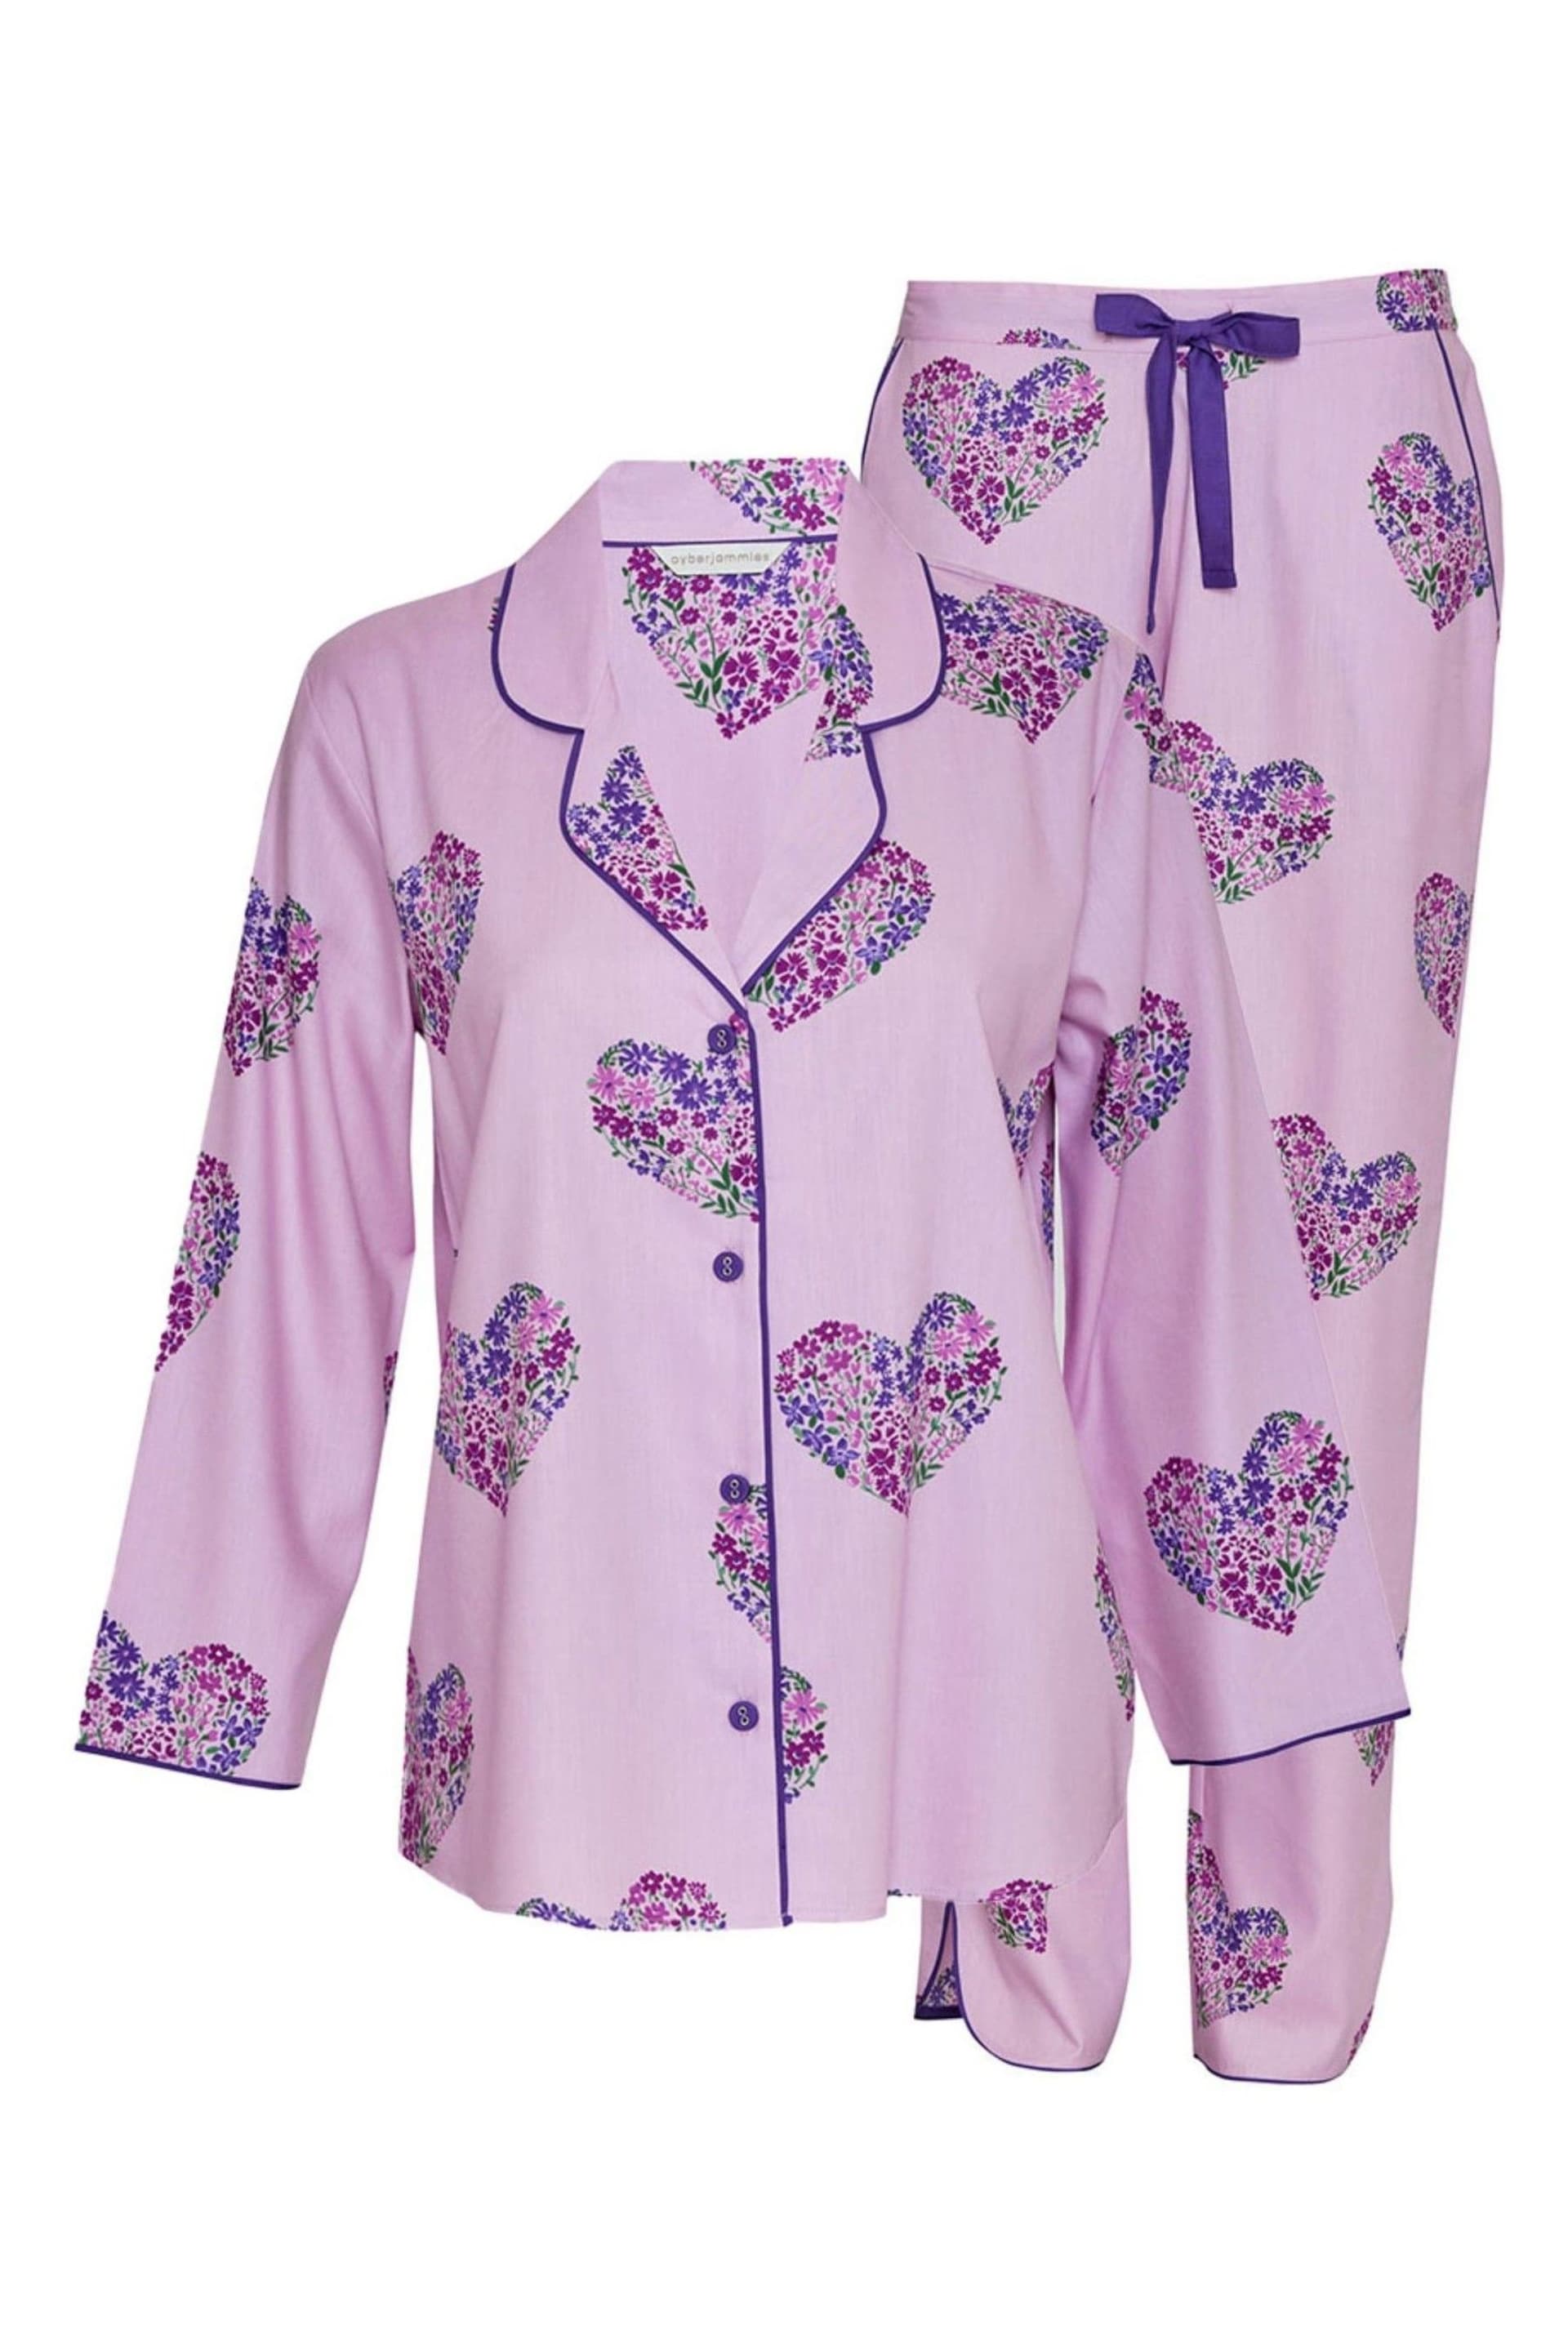 Cyberjammies Pink Curve Long Sleeve Pyjama Set - Image 4 of 4